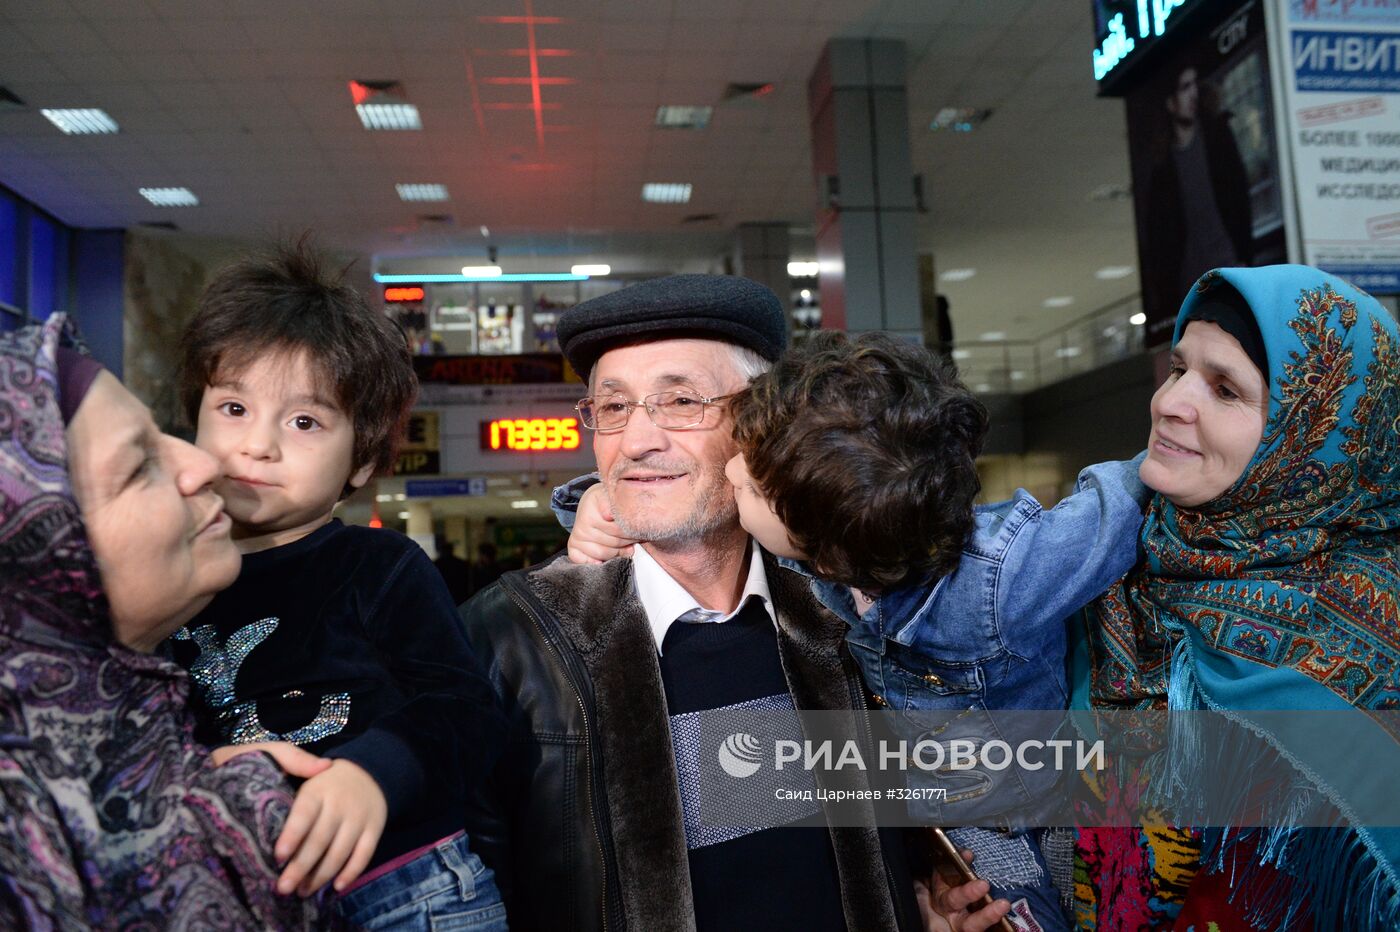 Спасенную в Ираке девочку из Дагестана передали родственникам в аэропорту Грозного